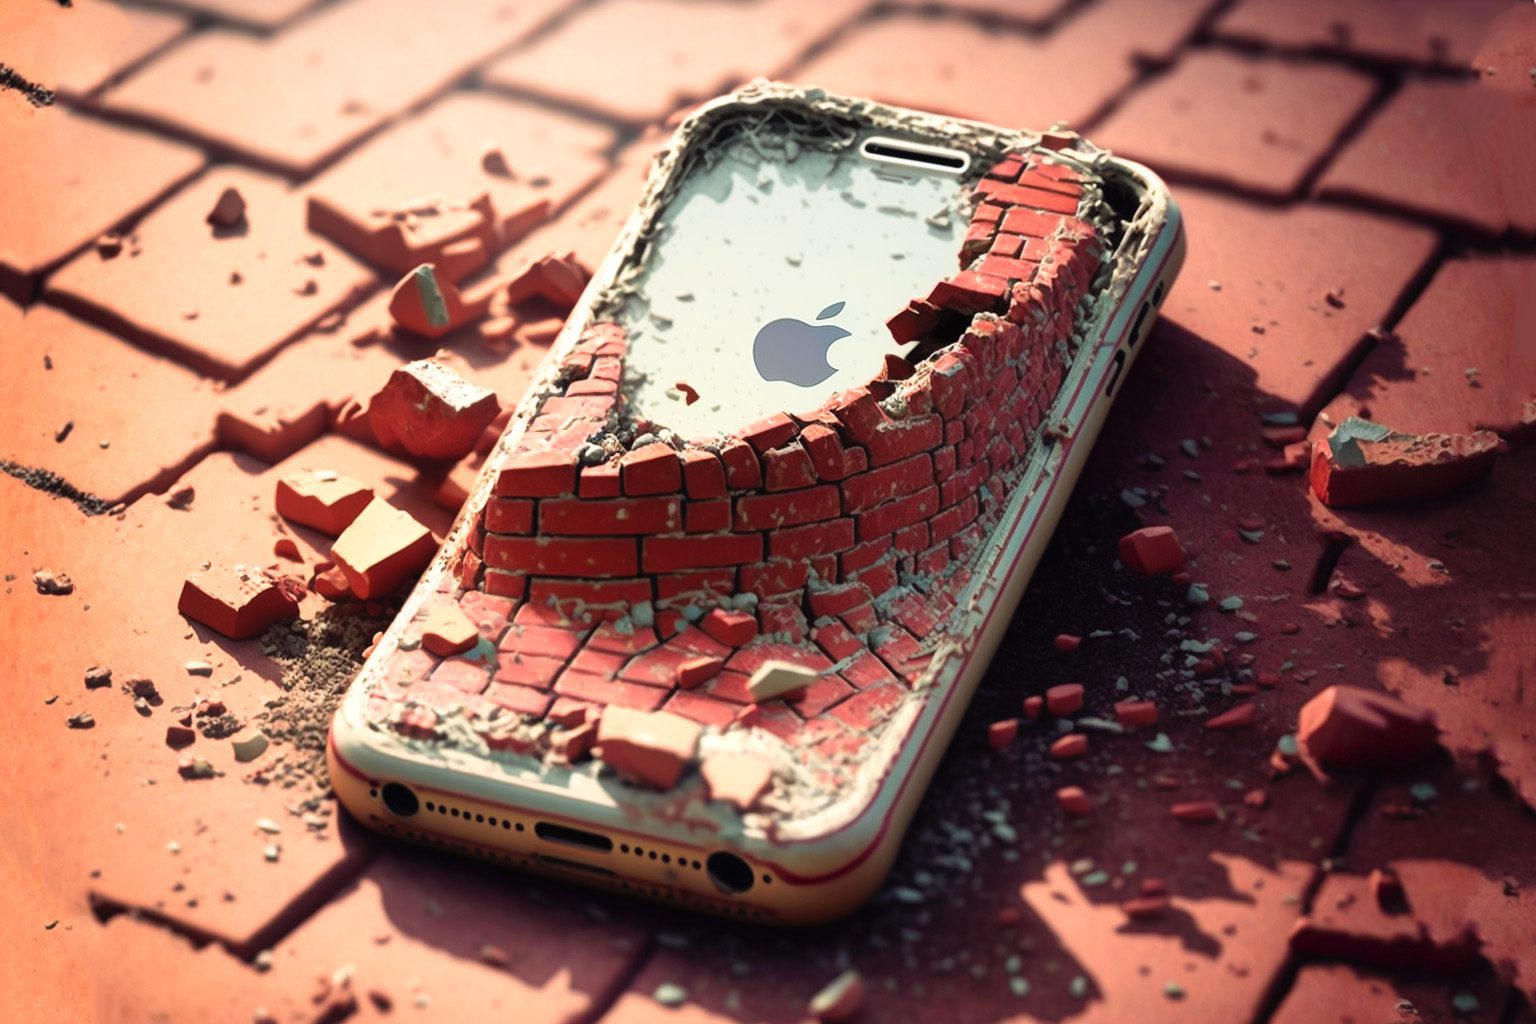 Praktisch wie ein Ziegelstein – so könnte man ein gebricktes iPhone beschreiben.